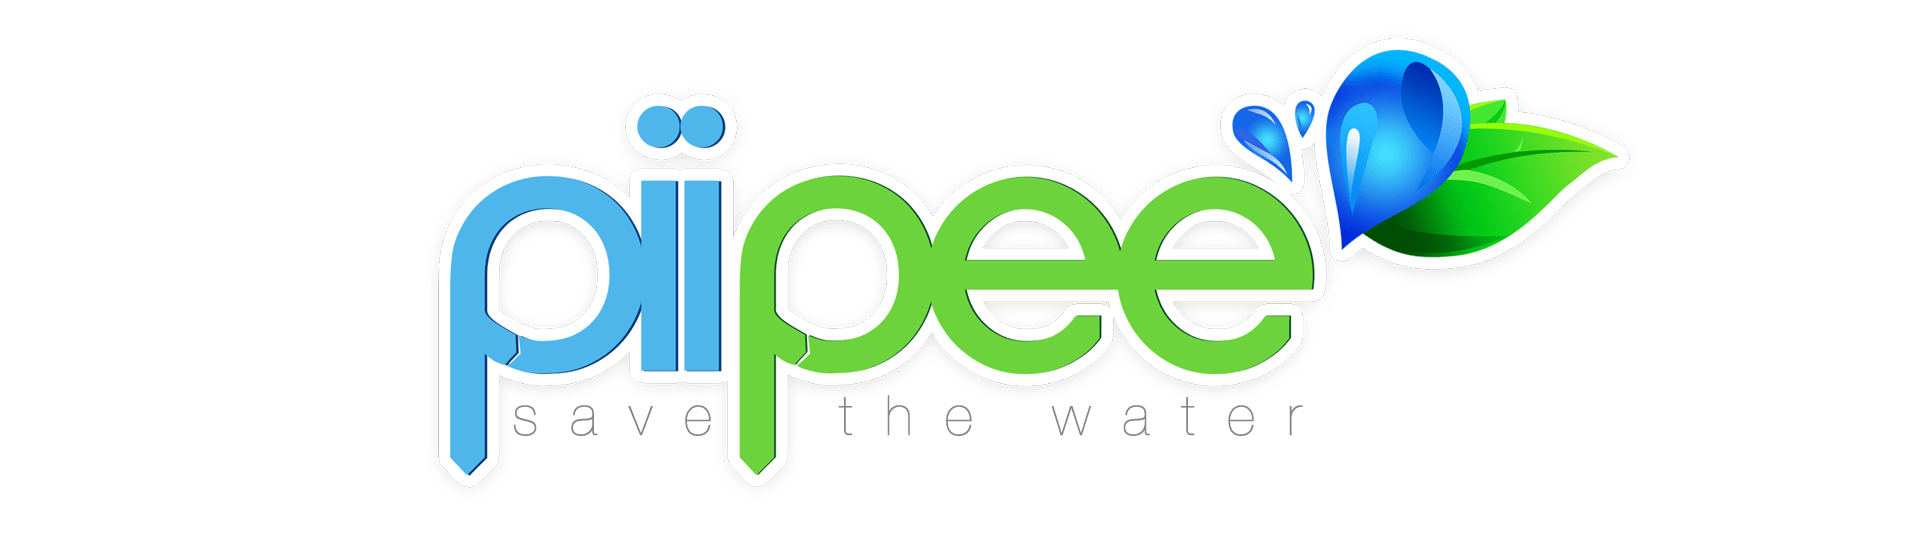 Piipee: Empresa gaúcha desenvolve dispositivo que reduz consumo de água